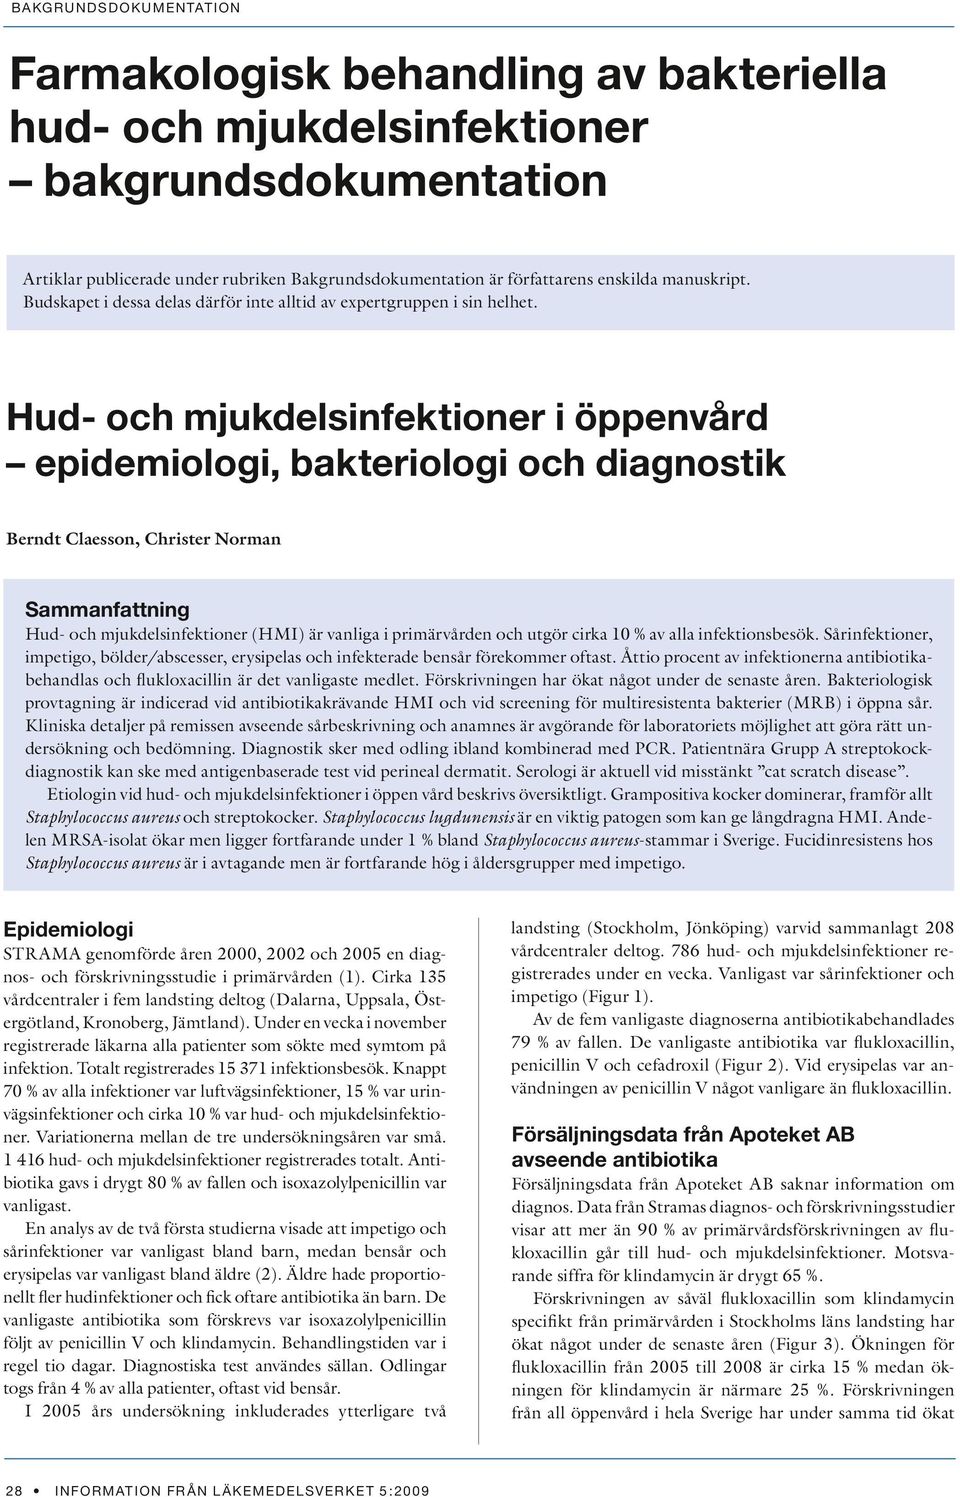 Hud- och mjukdelsinfektioner i öppenvård epidemiologi, bakteriologi och diagnostik Berndt Claesson, Christer Norman Sammanfattning Hud- och mjukdelsinfektioner (HMI) är vanliga i primärvården och